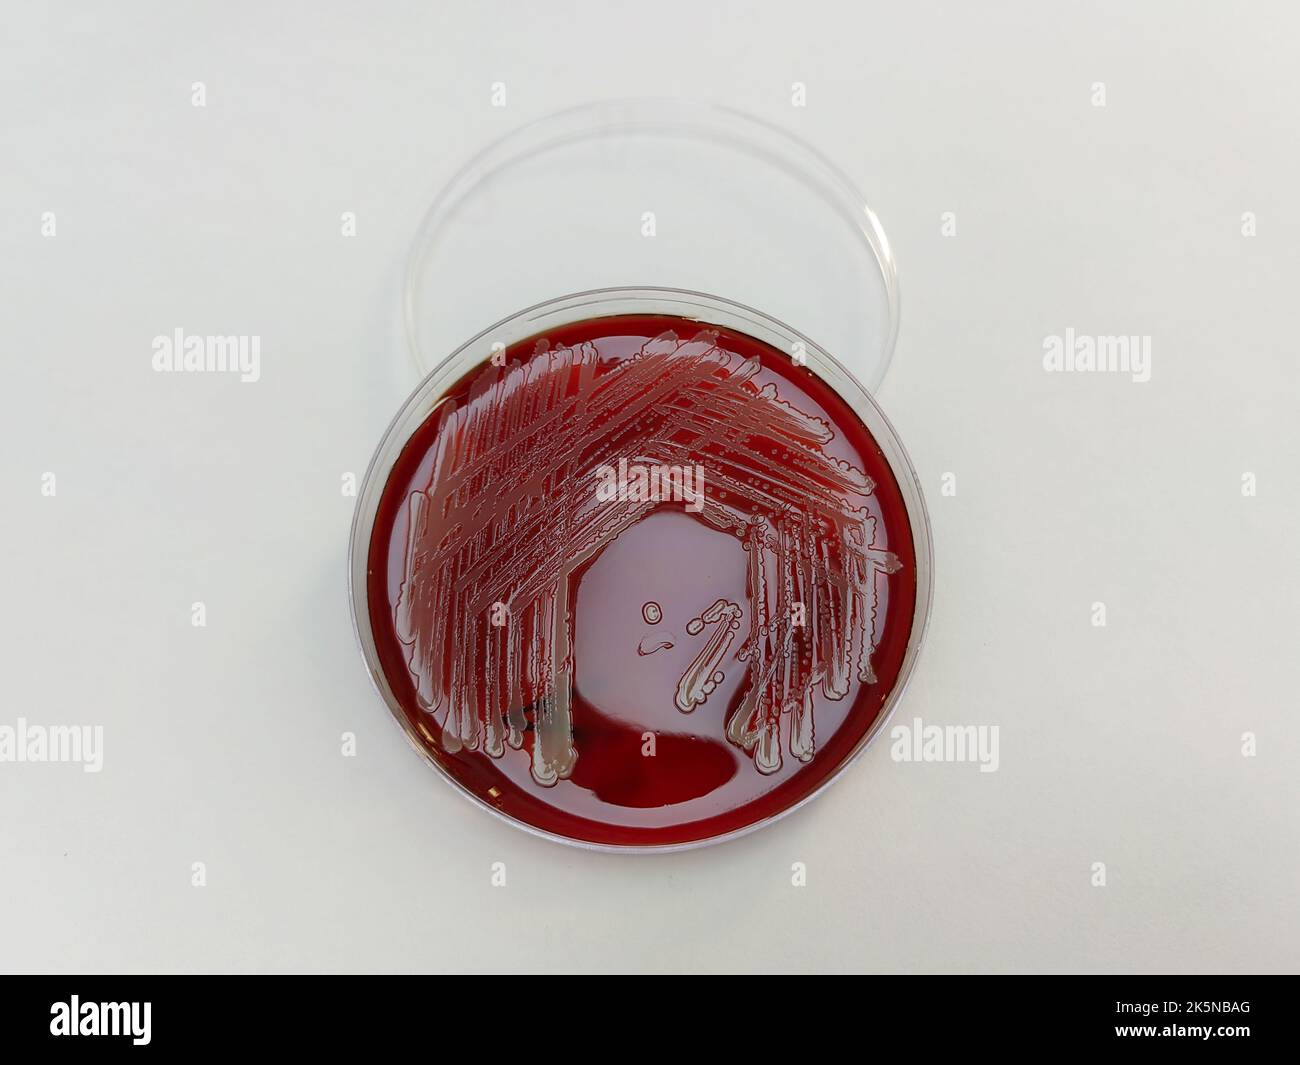 Une bactérie Staphylococcus aureus affichée sur une plaque de ...